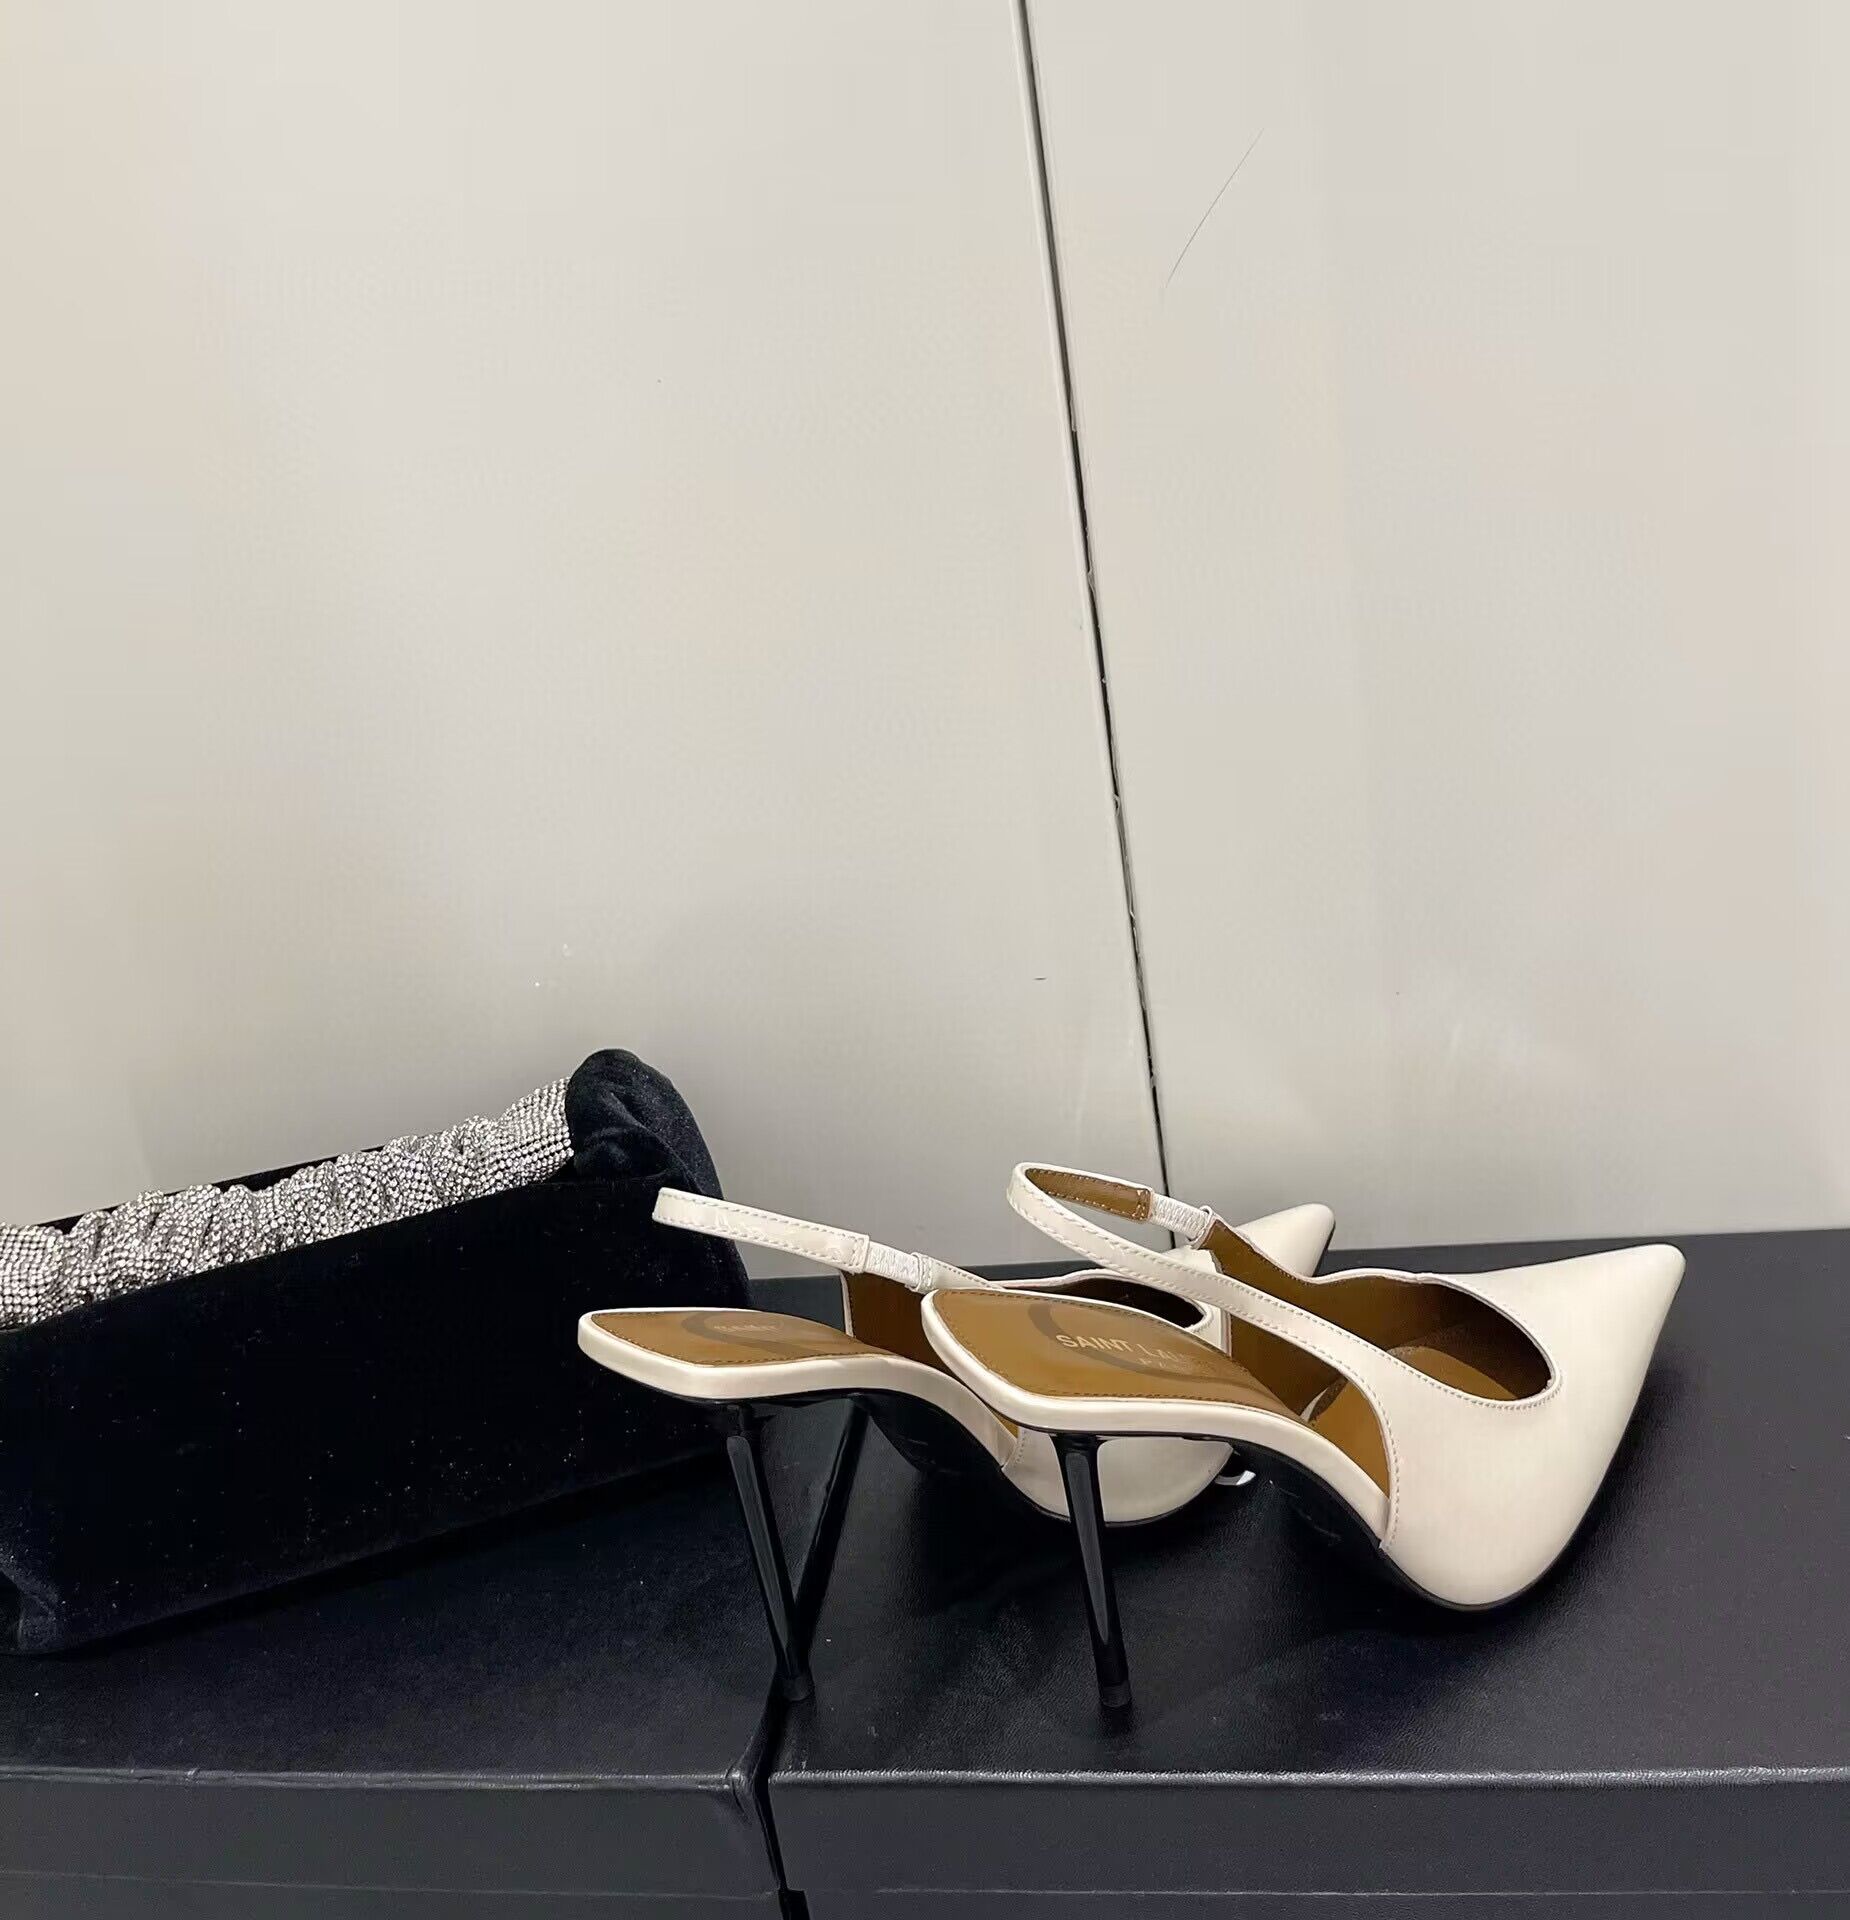 Saint Laurent Shoes heel height 10CM 63301 Cream